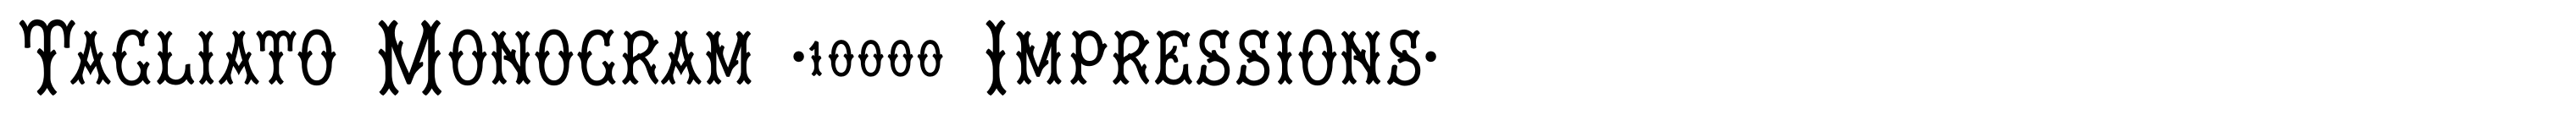 Tagliato Monogram (10000 Impressions)